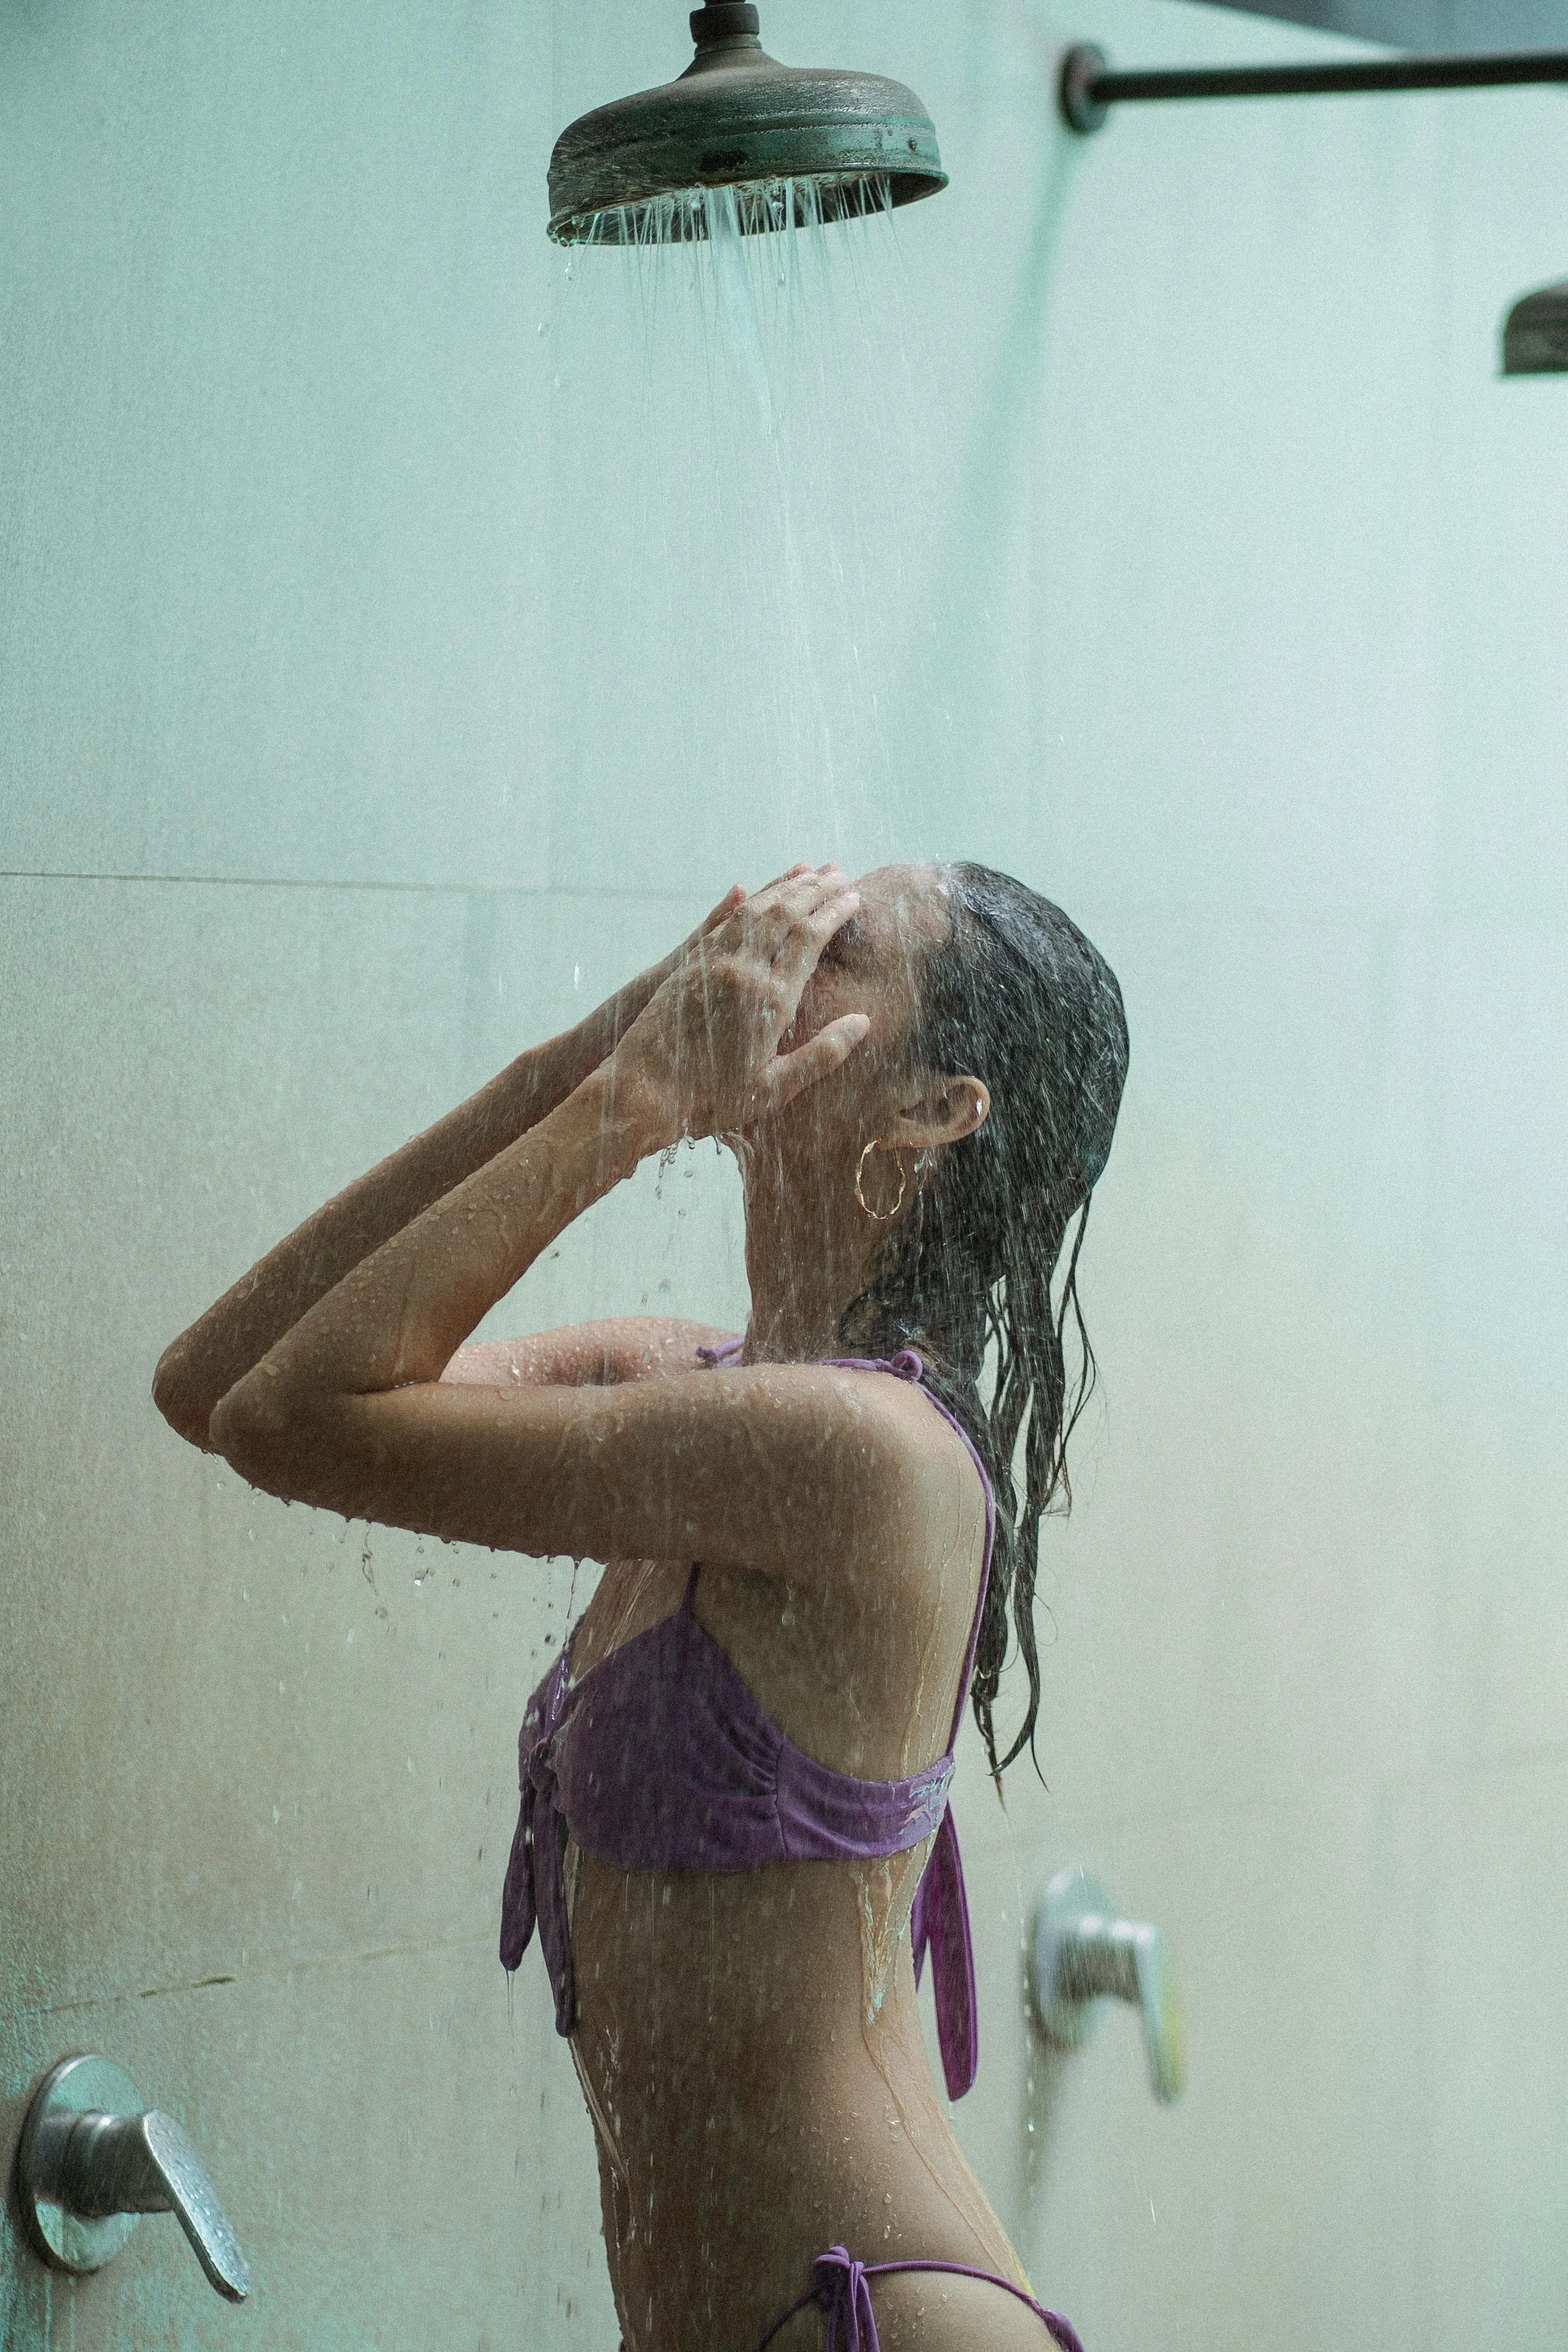 Горячий душ плохо влияет на состояние кожи и волос